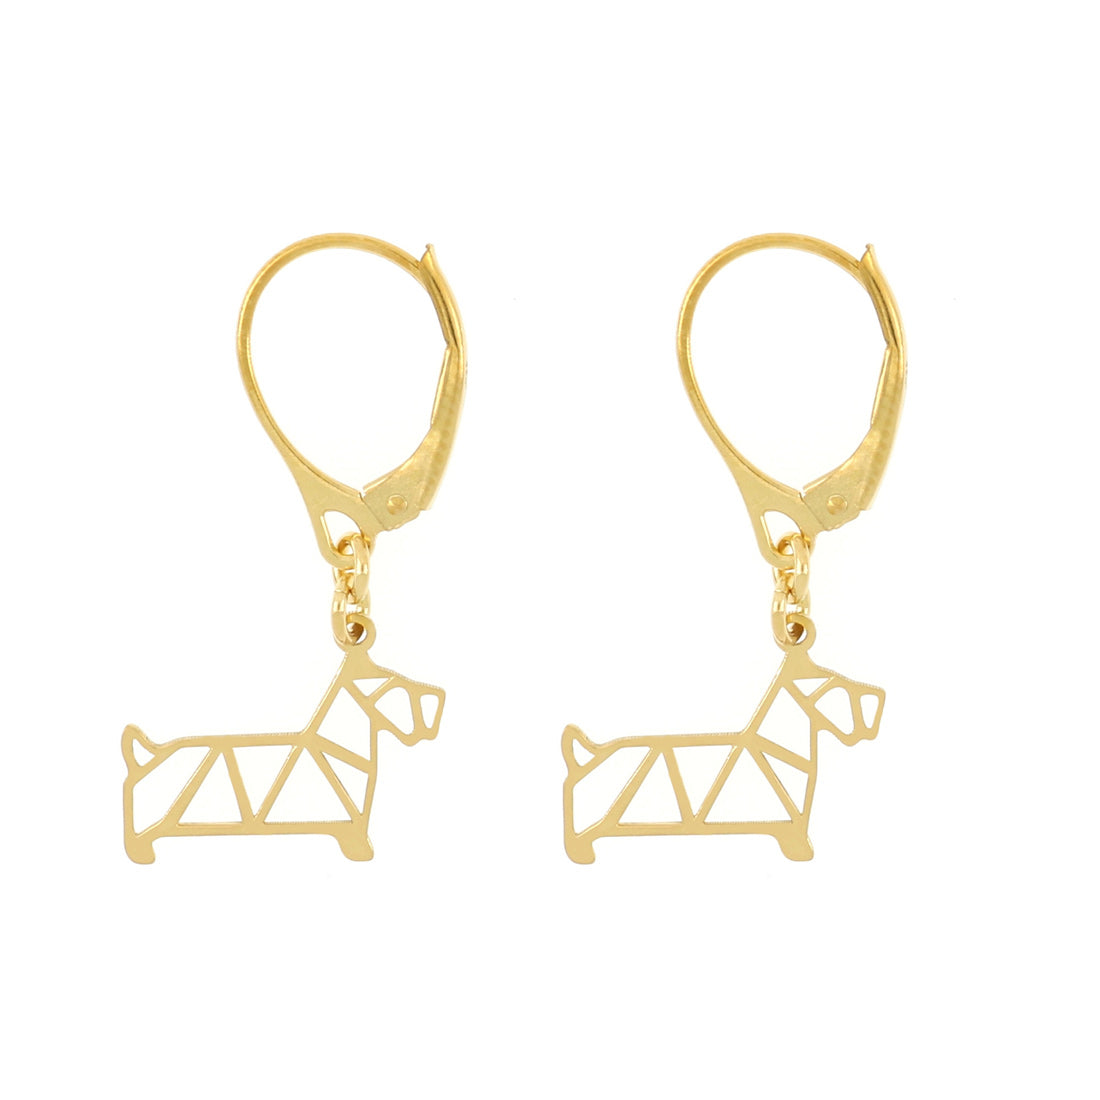 Orecchini oro con pendenti a forma di cane e chiusura a monachella